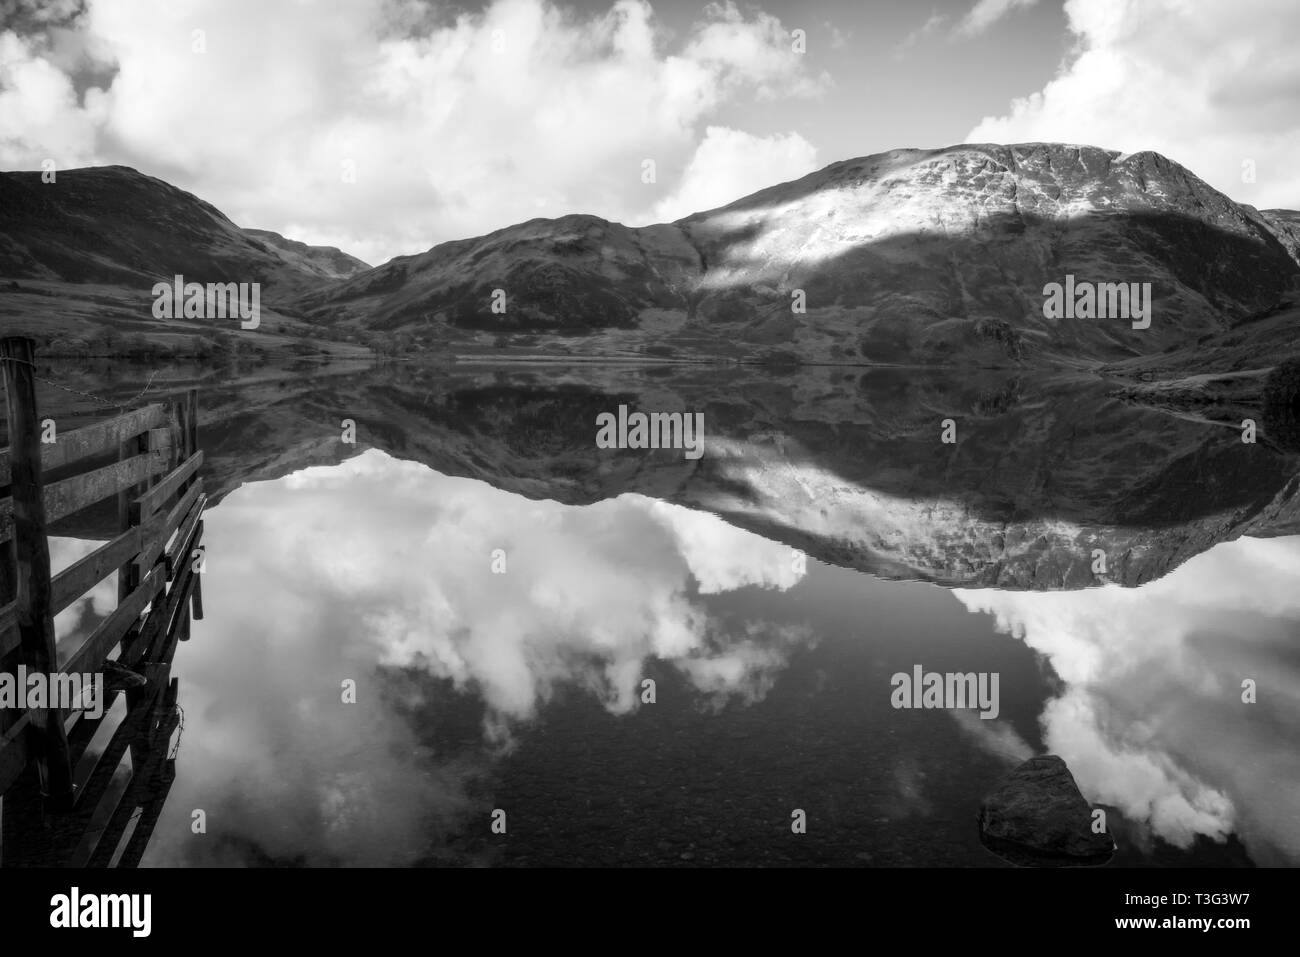 Fotografia in bianco e nero di Crummock acqua. Crummock Water è situato nel Parco Nazionale del Distretto dei Laghi nella contea di Cumbria,Nord Ovest Inghilterra Foto Stock